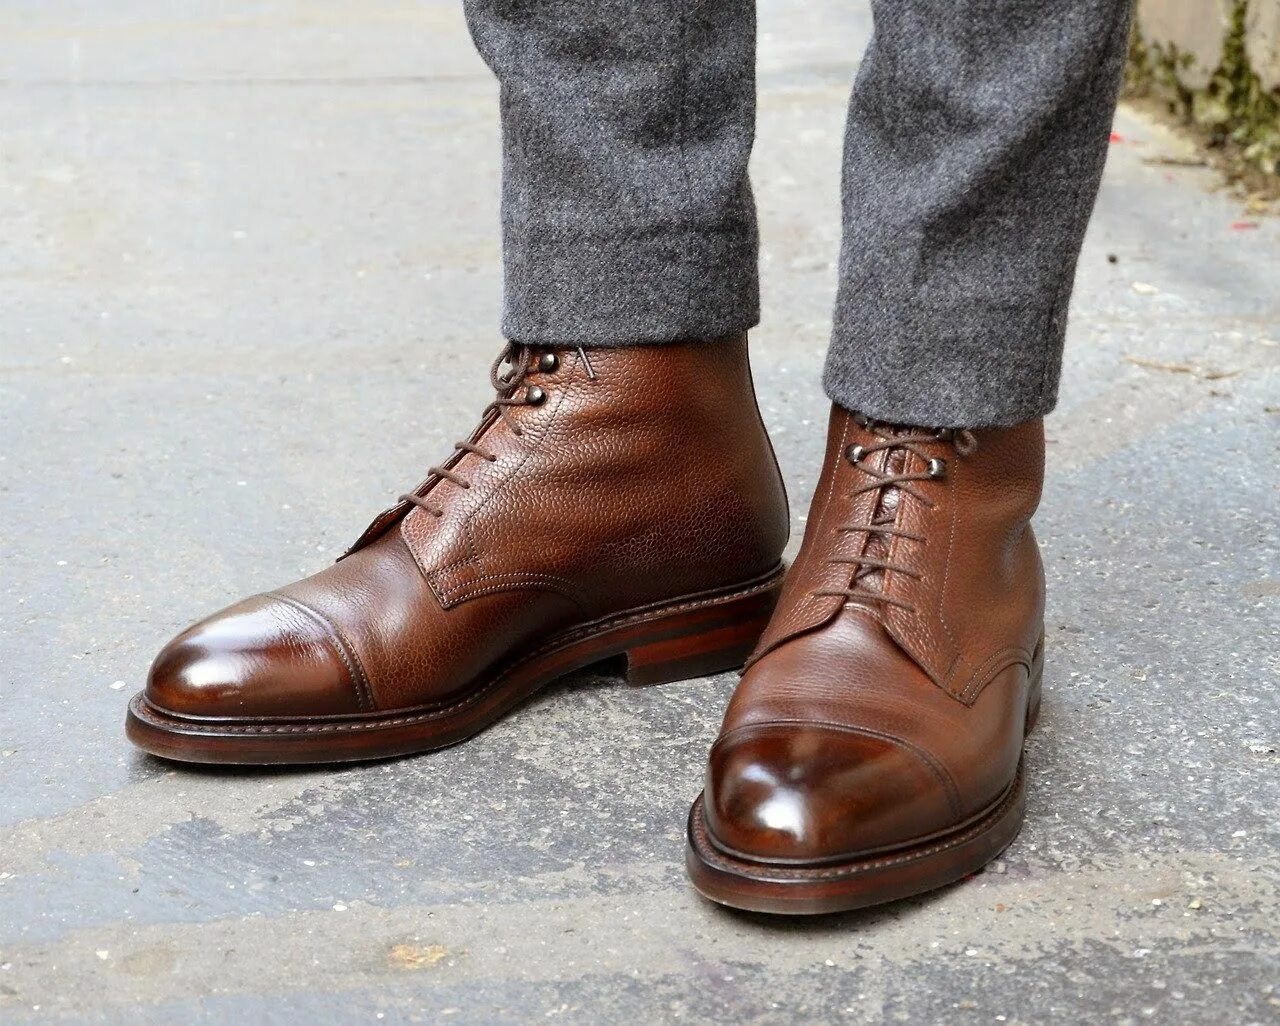 Ботинки Crockett & Jones Coniston Derby. Hans - мужские коричневые кожаные ботинки - 09848214. Американская мужская обувь